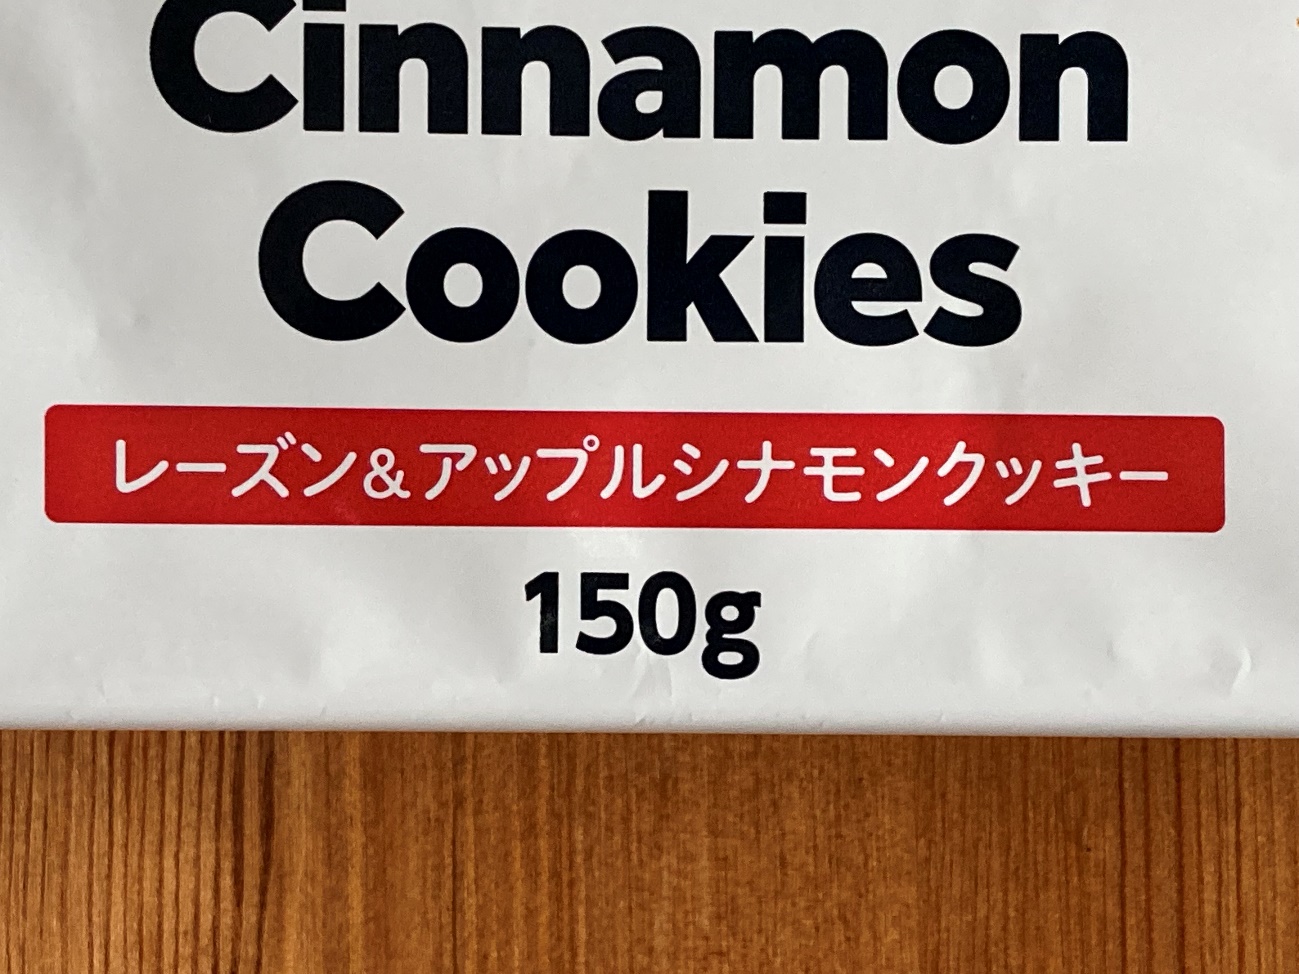 業務スーパーのレーズン&アップルシナモンクッキー内容量150gの表記